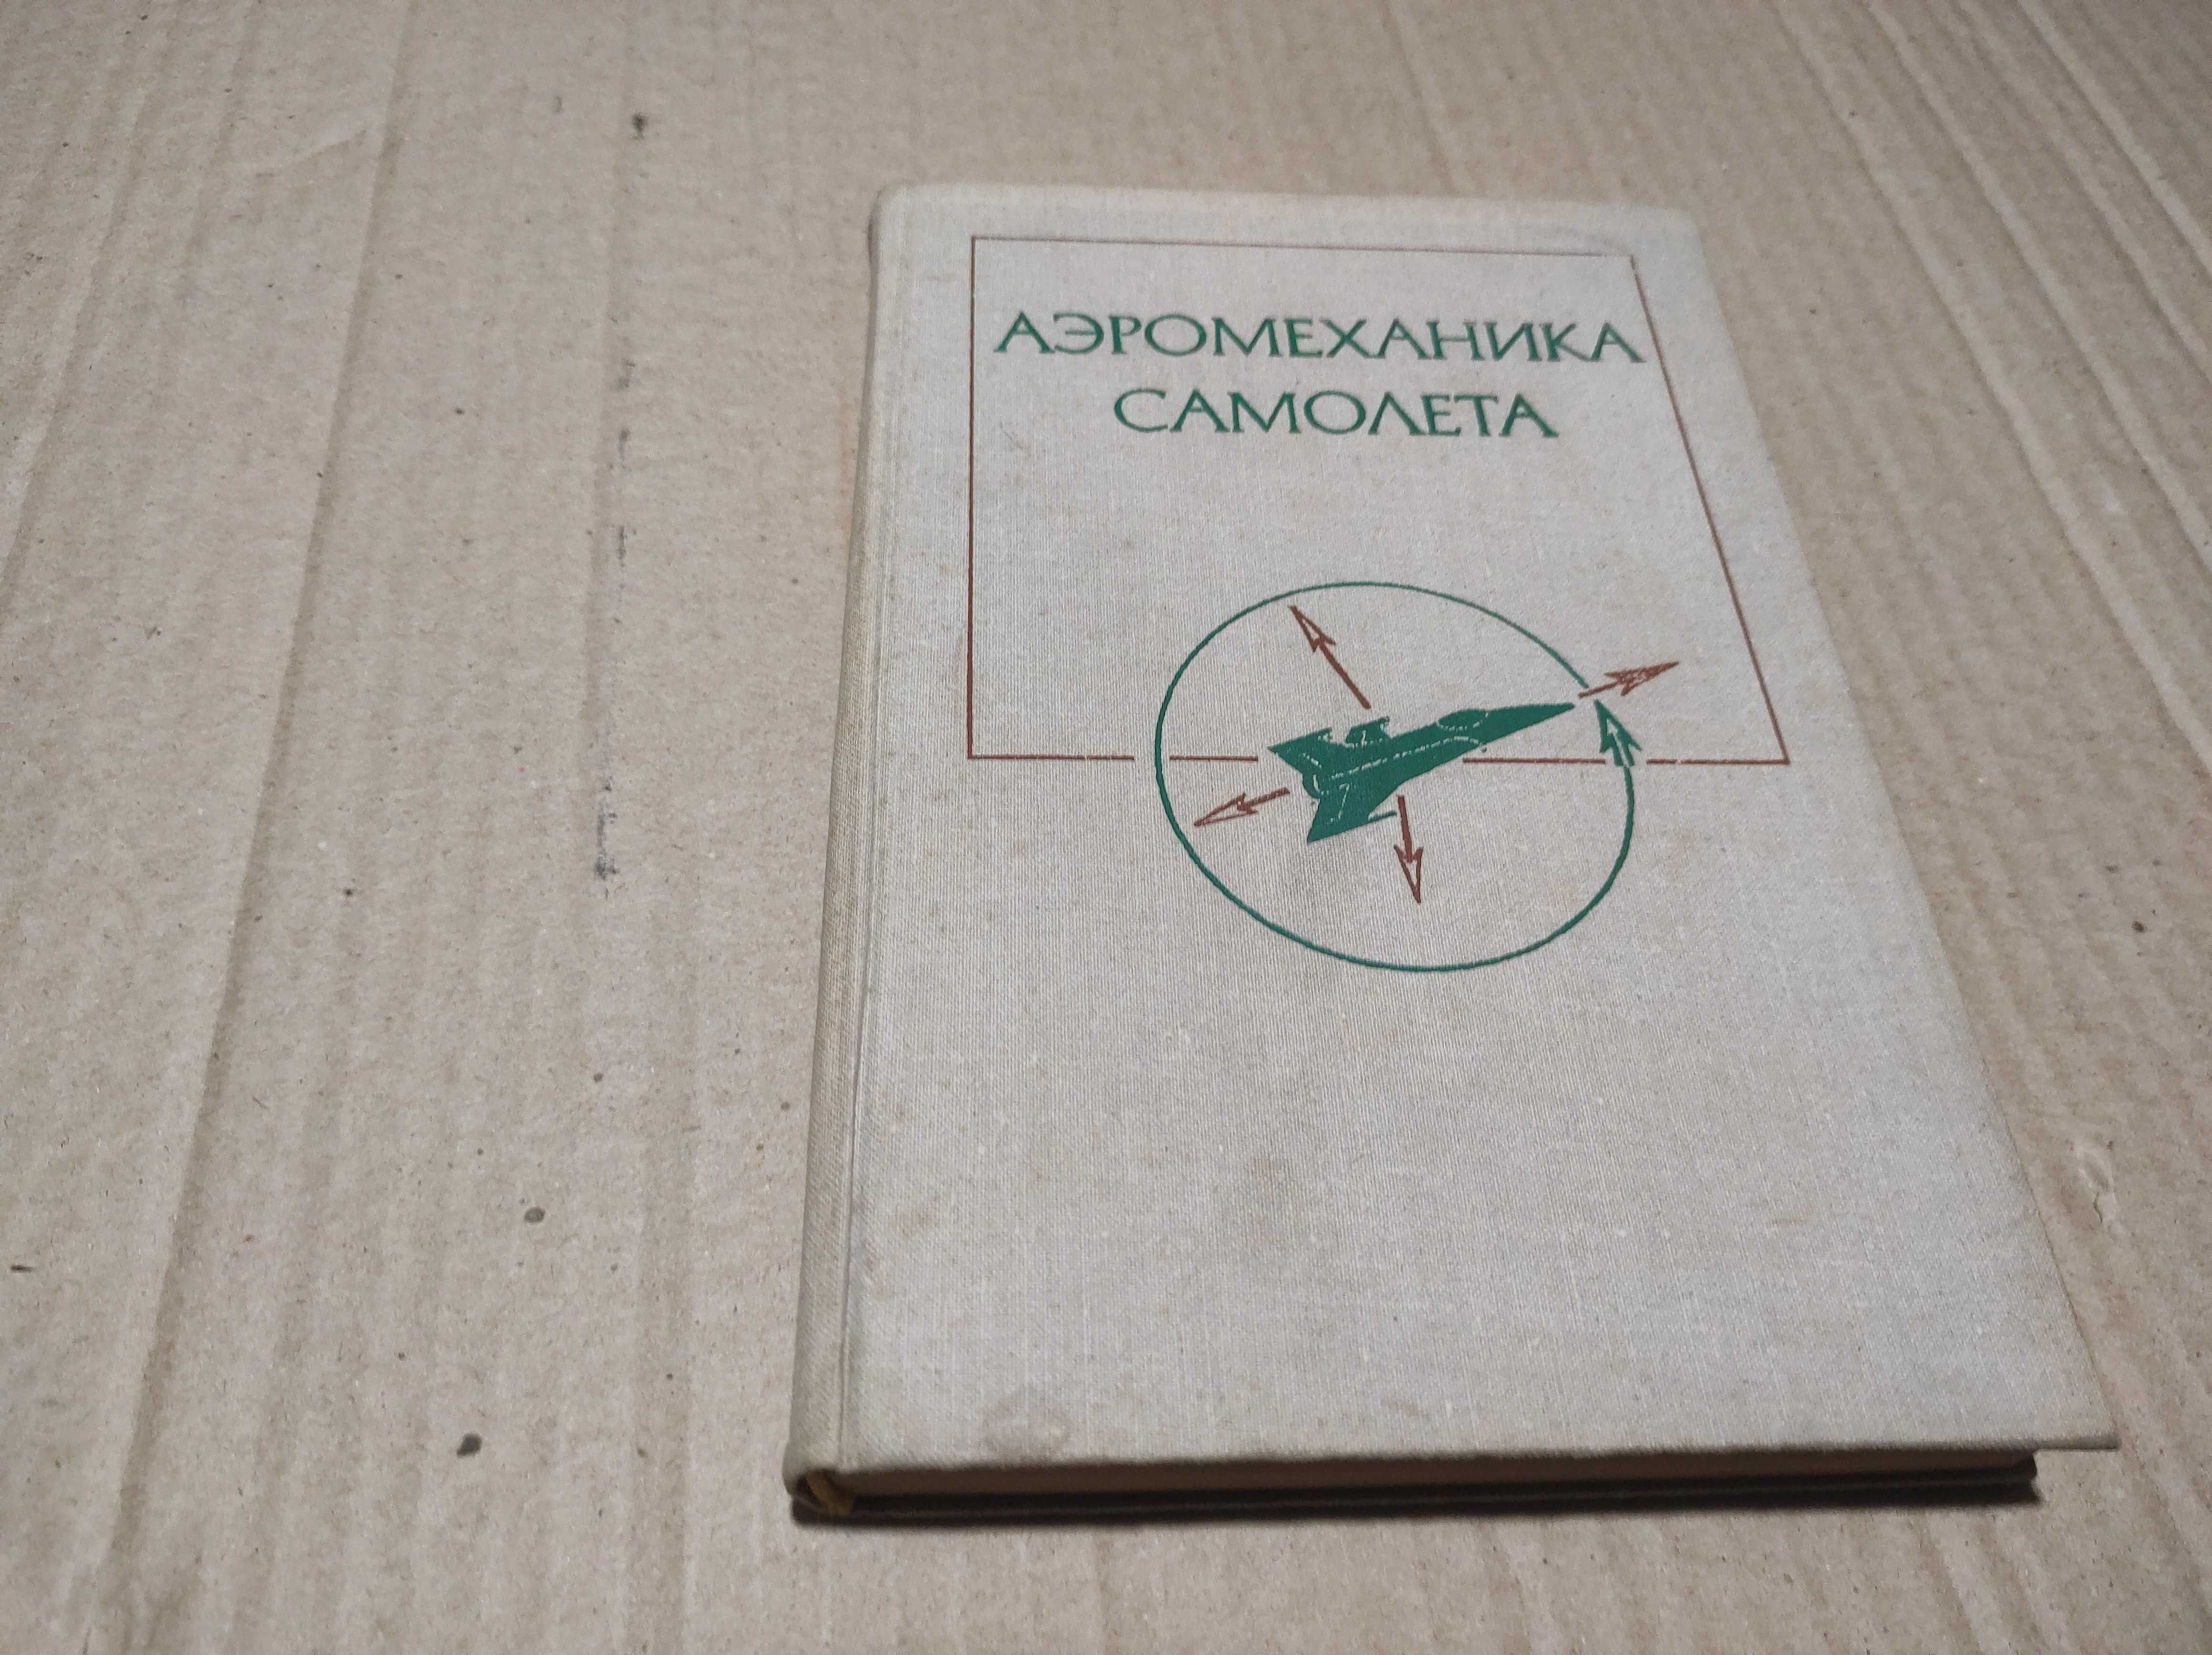 Книга "Аэромеханика самолета"1977 г.